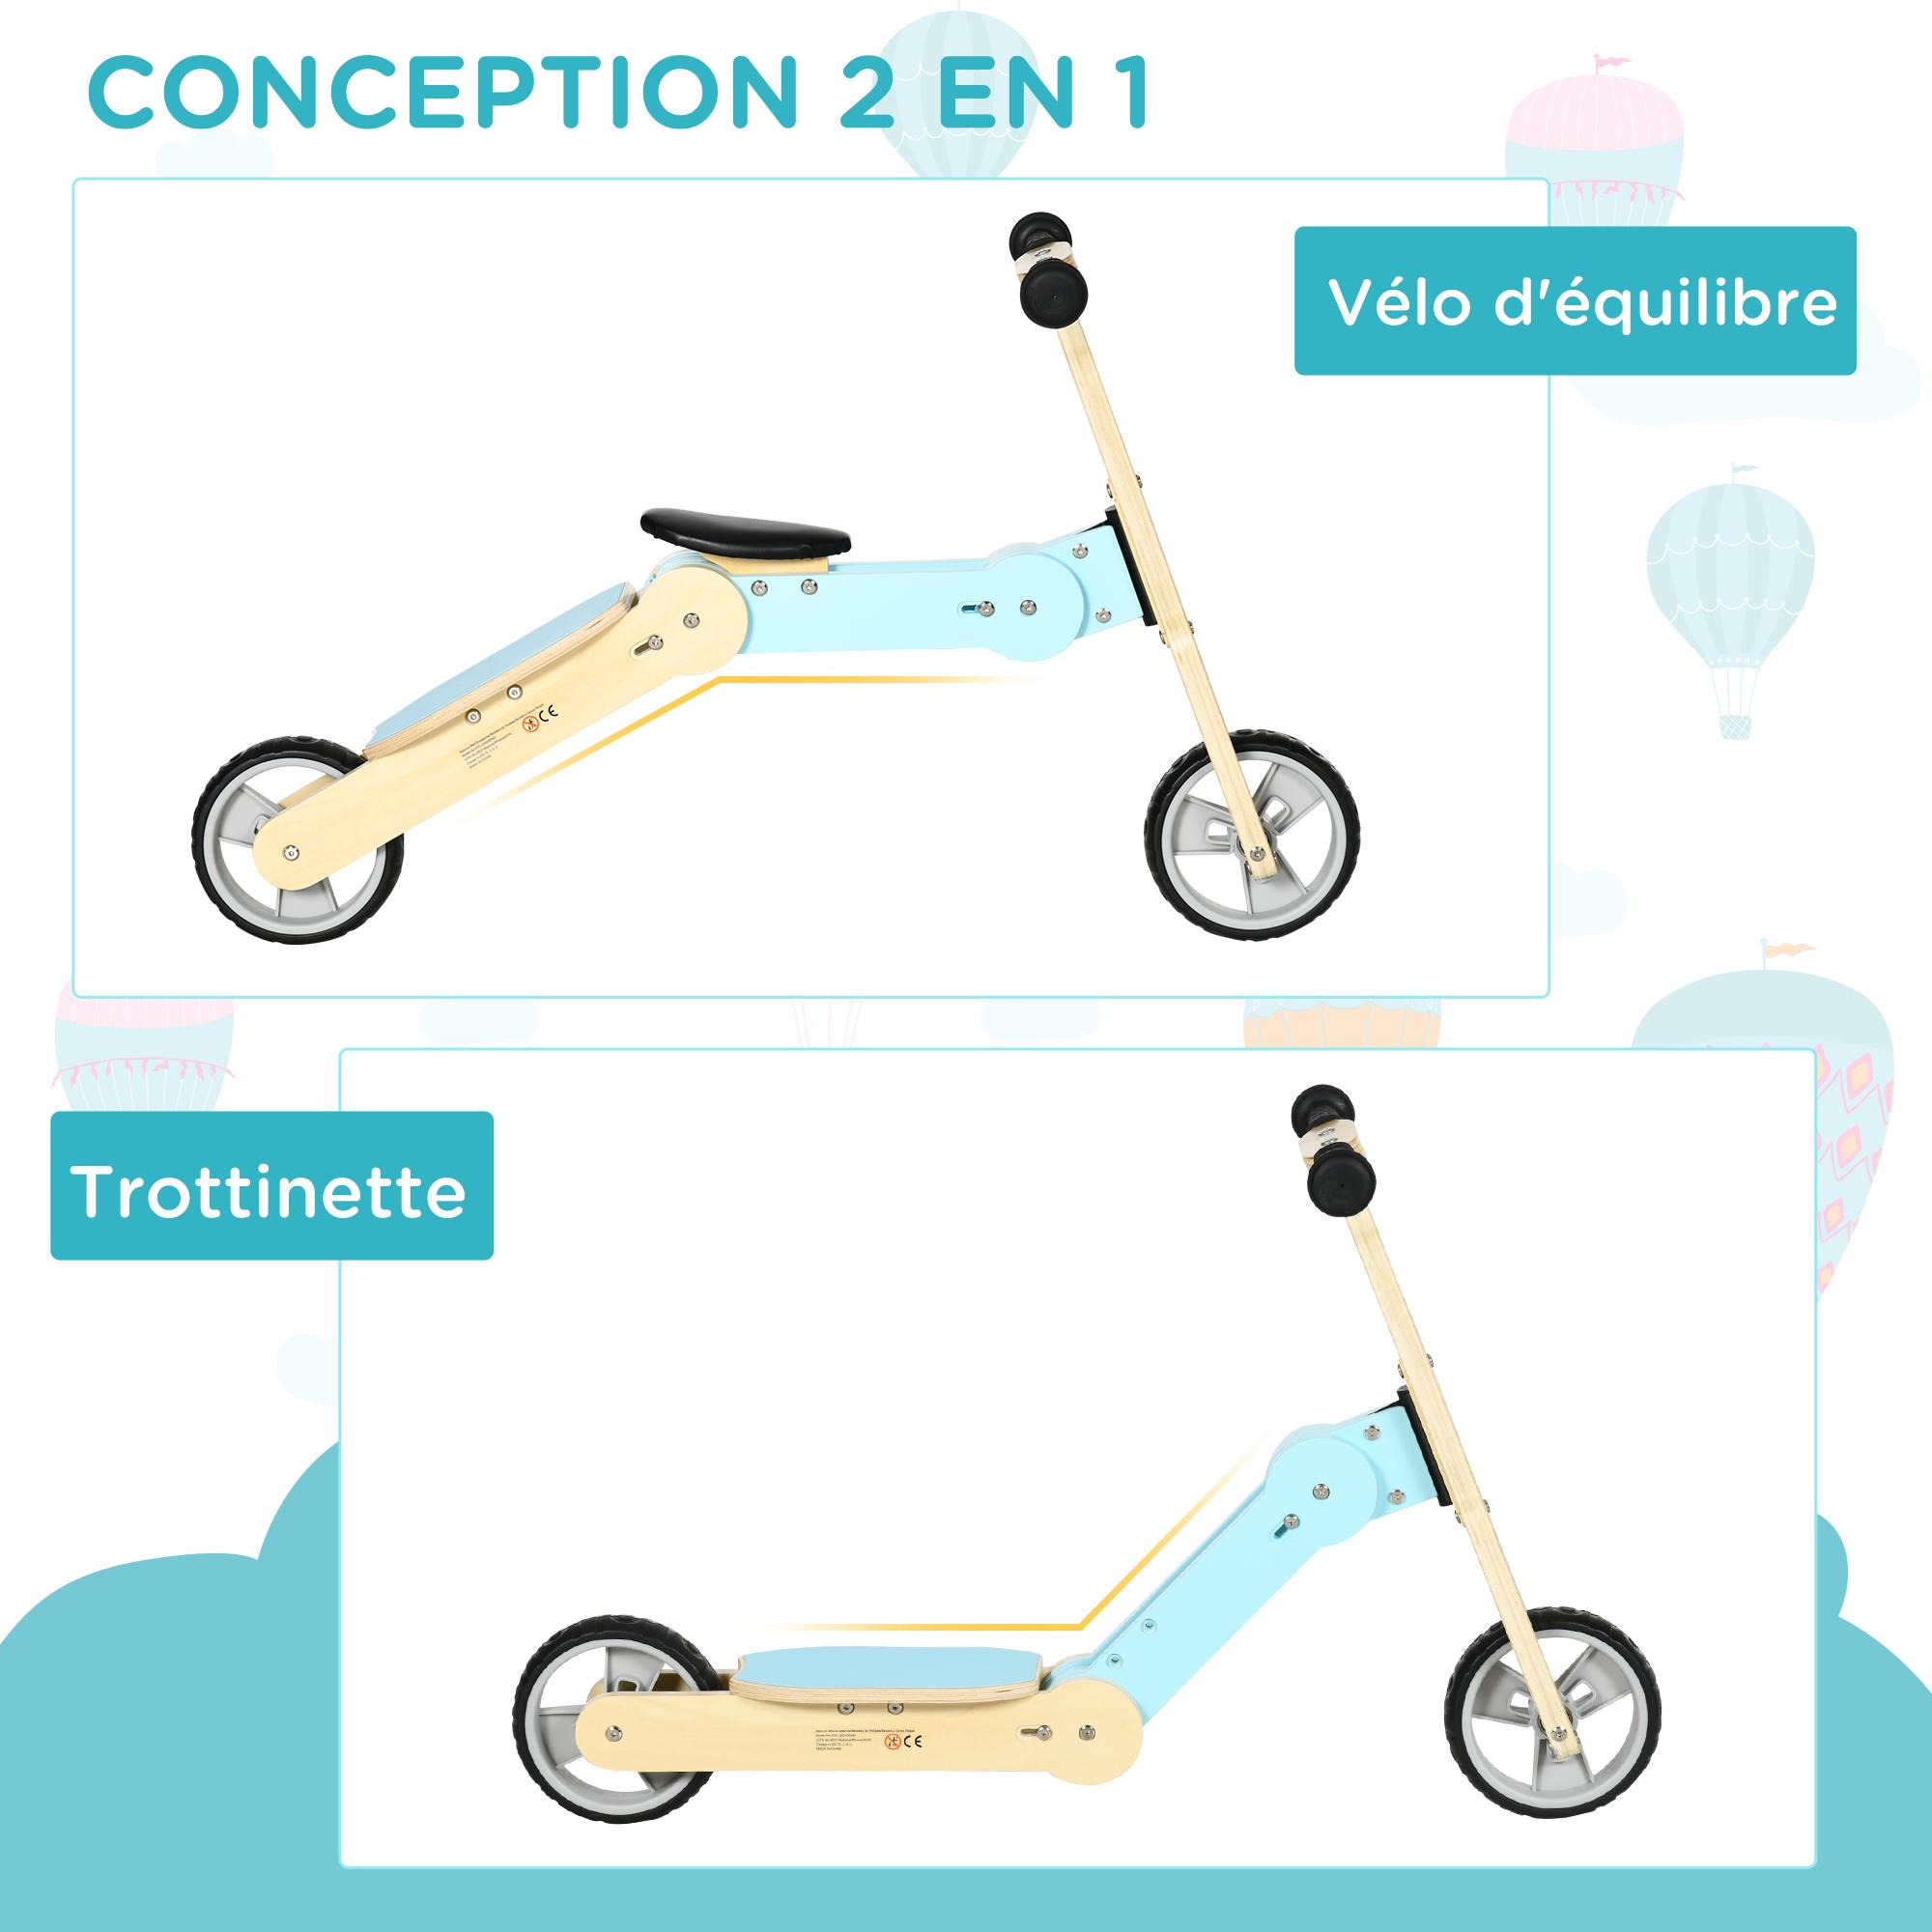 Draisienne trottinette enfant 2 en 1 - roues EVA texturées, guidon ergonomique, marche-pied antidérapant - panneaux bois bleu ciel